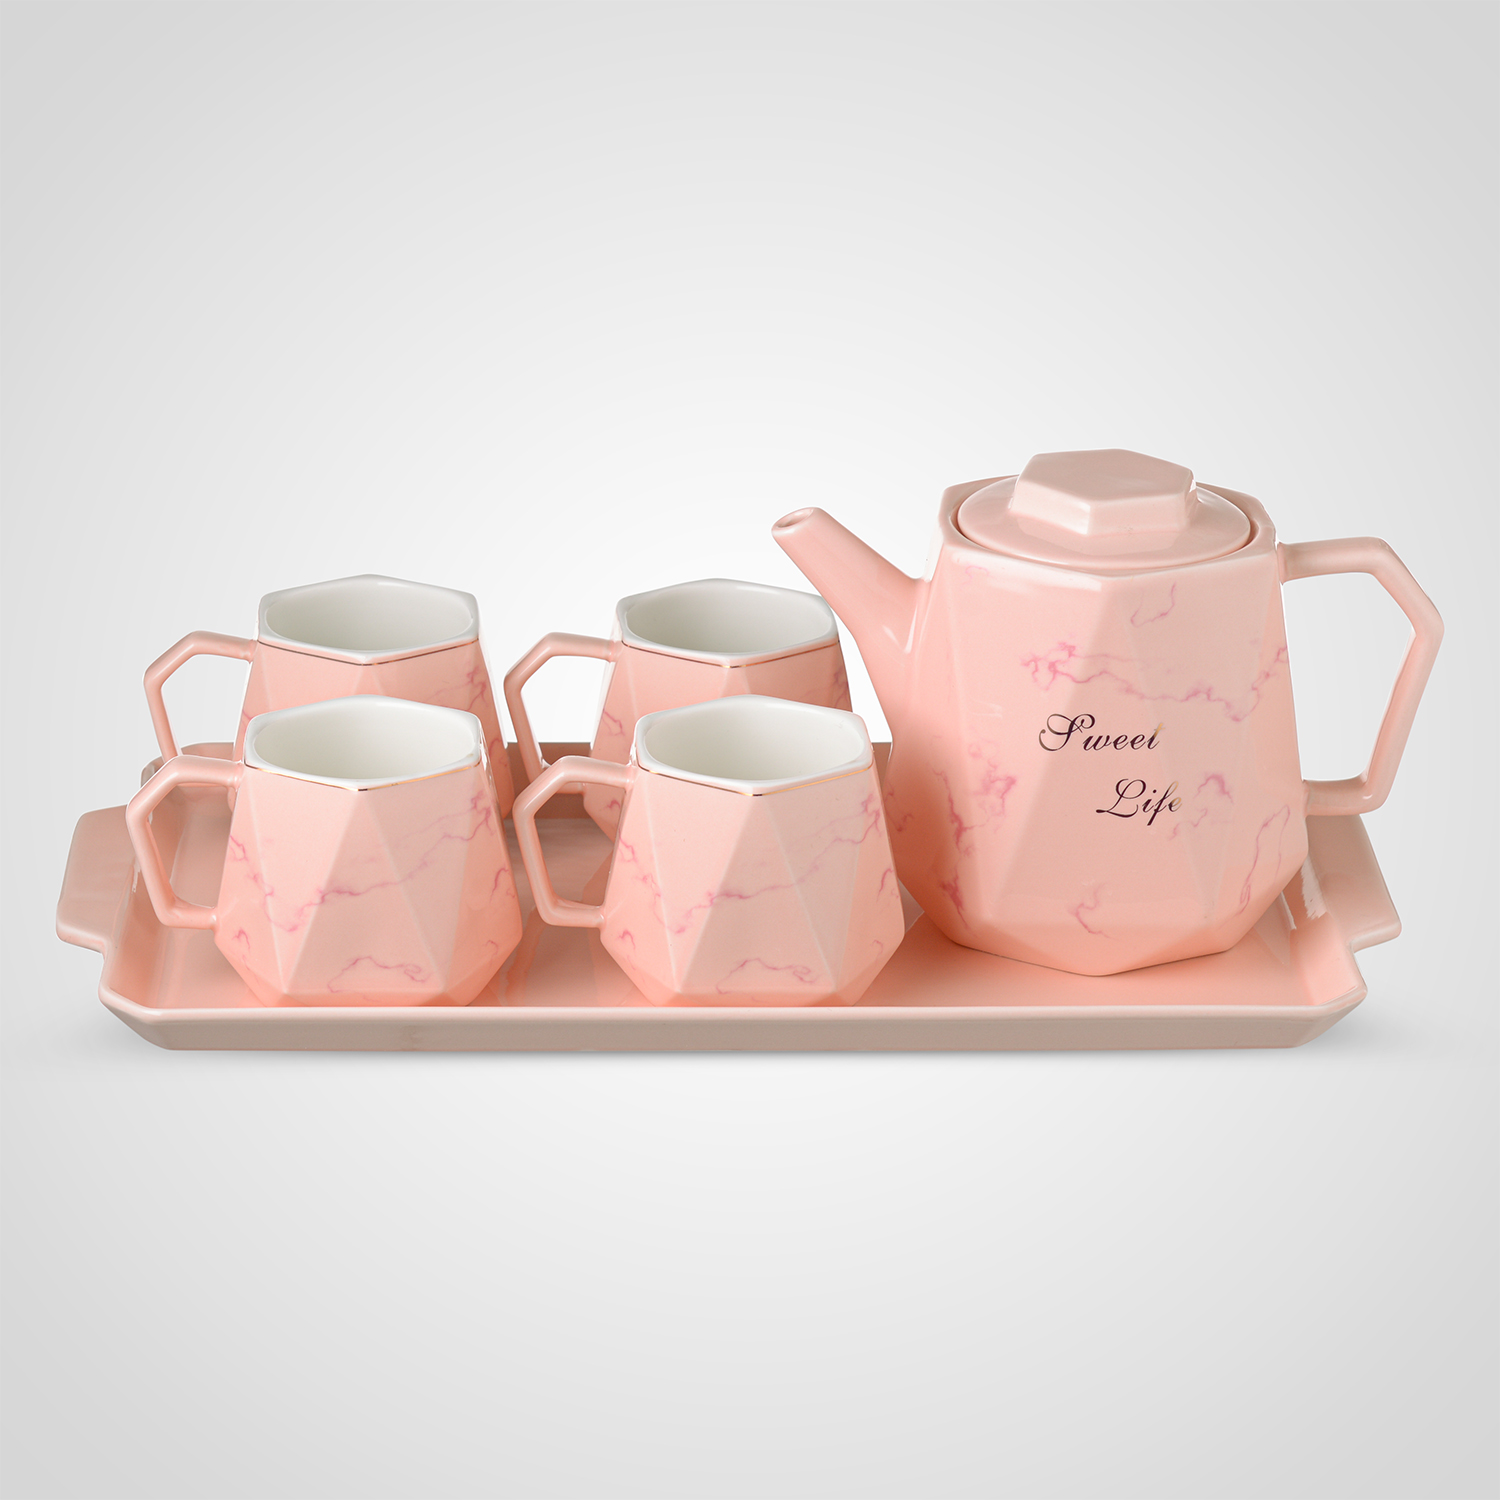 Керамический Розовый  для Чаепития: Поднос, Чайник, 4 Кружки .